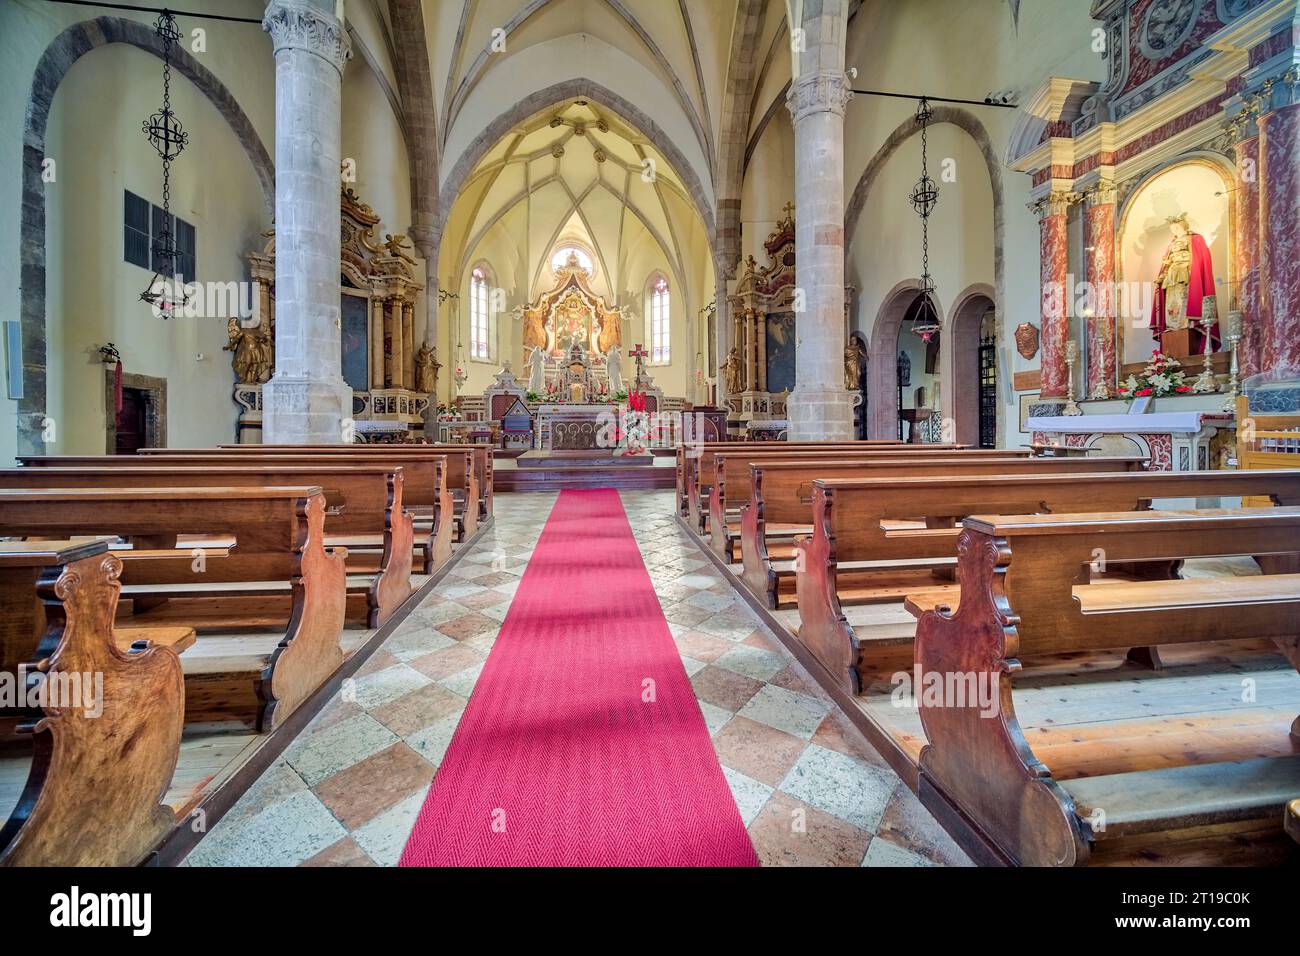 Interior design and altar inside the church Basilica dei Santi Martiri dell'Anaunia. Stock Photo